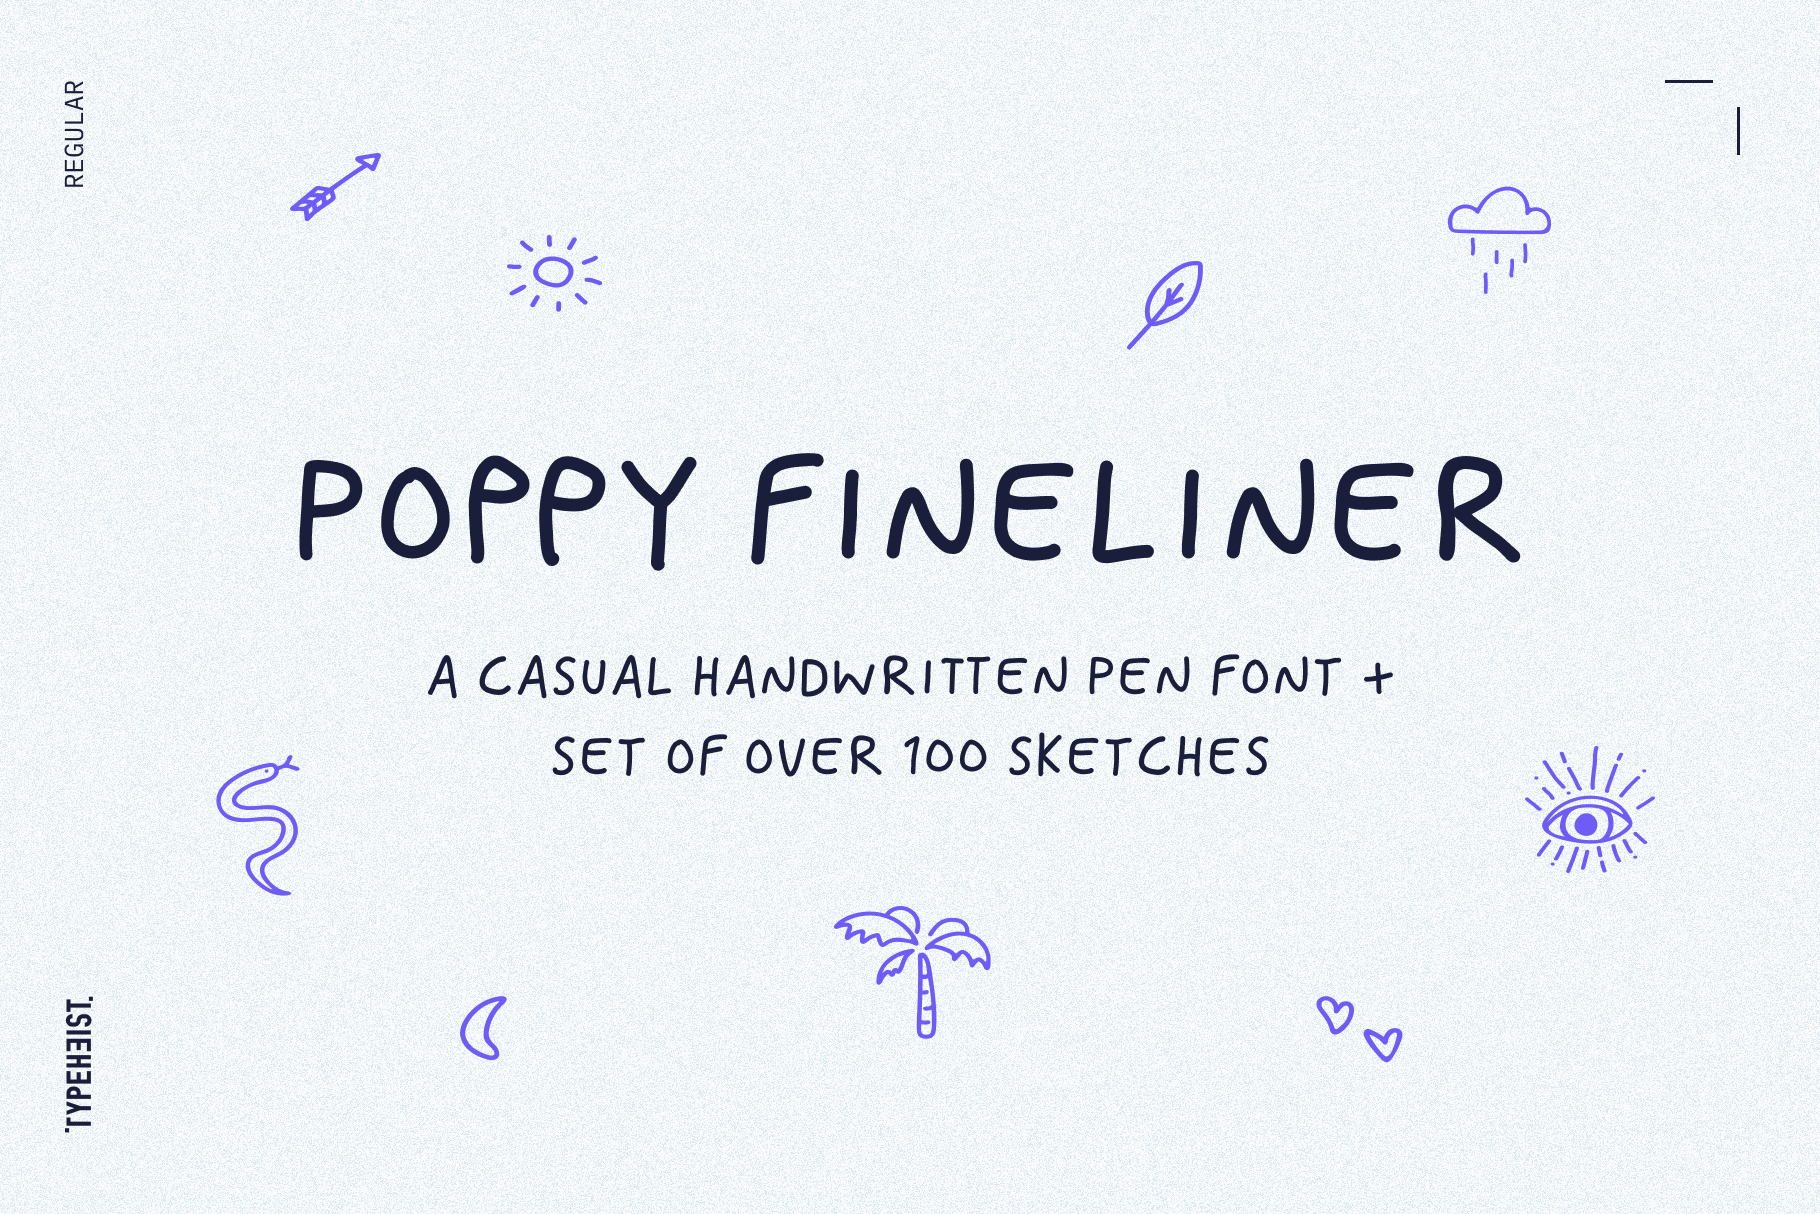 Poppy Fineliner: A fun handwritten font